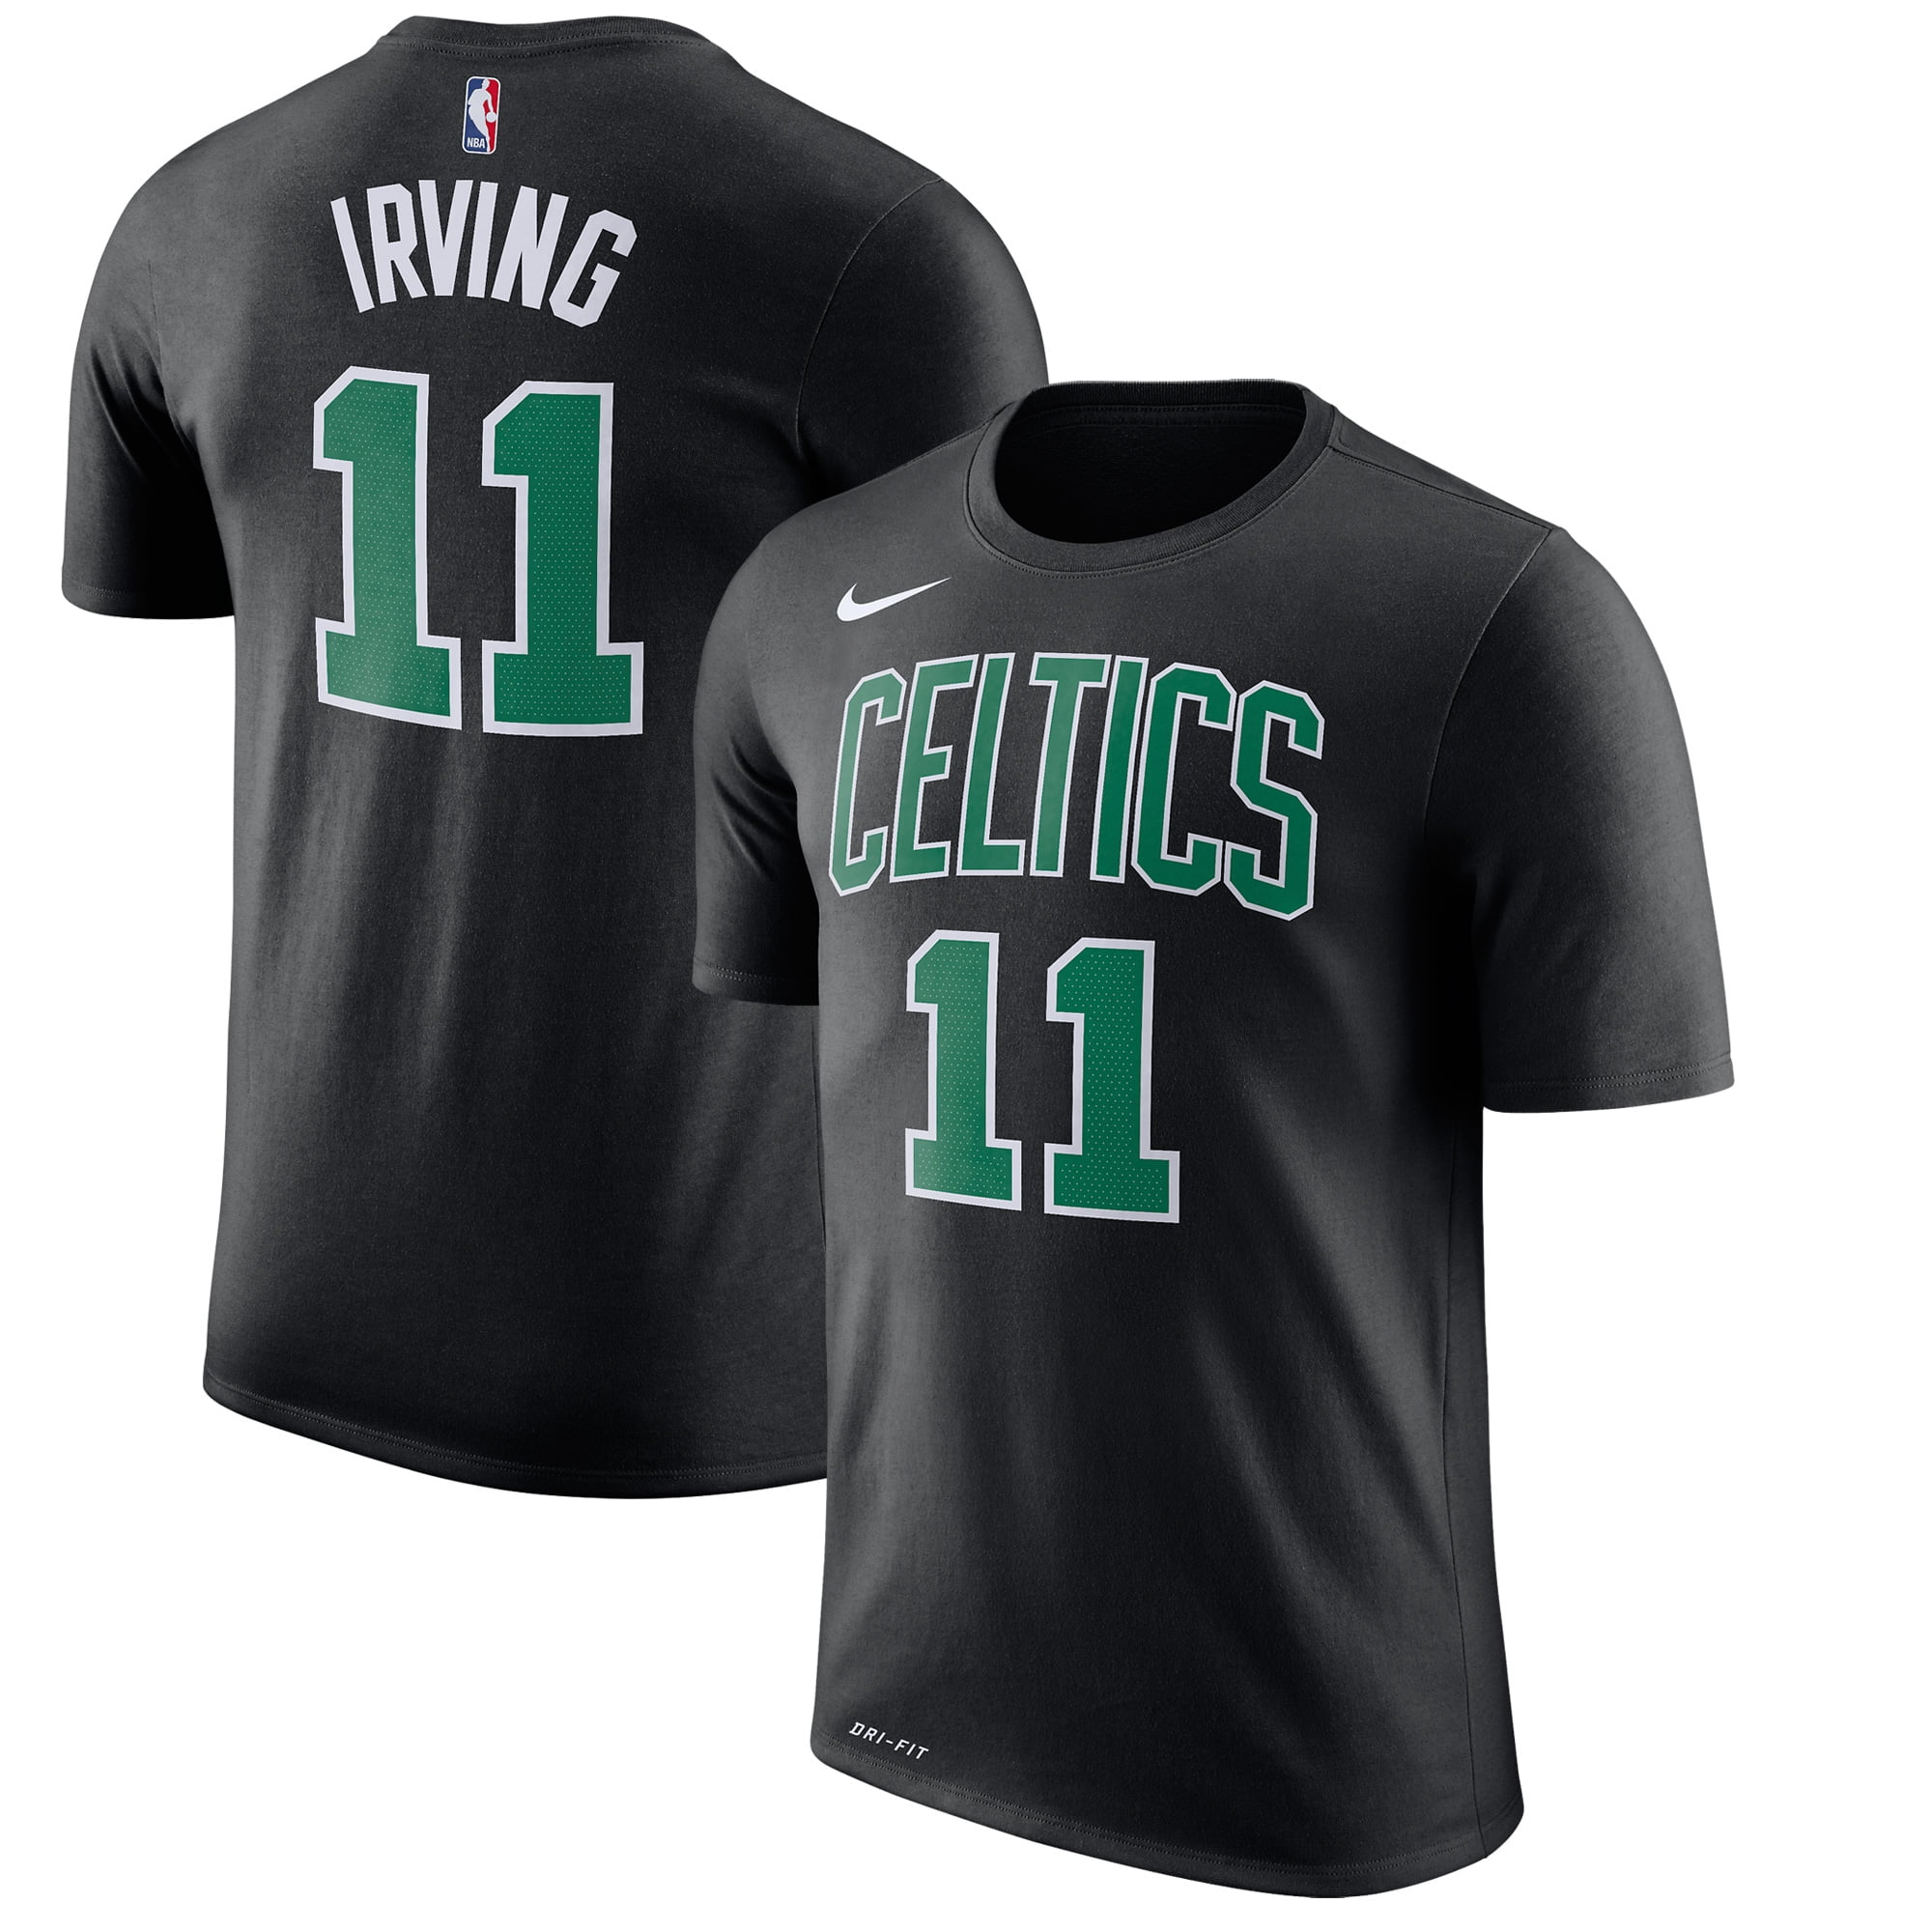 Nike - Kyrie Irving Boston Celtics Nike 